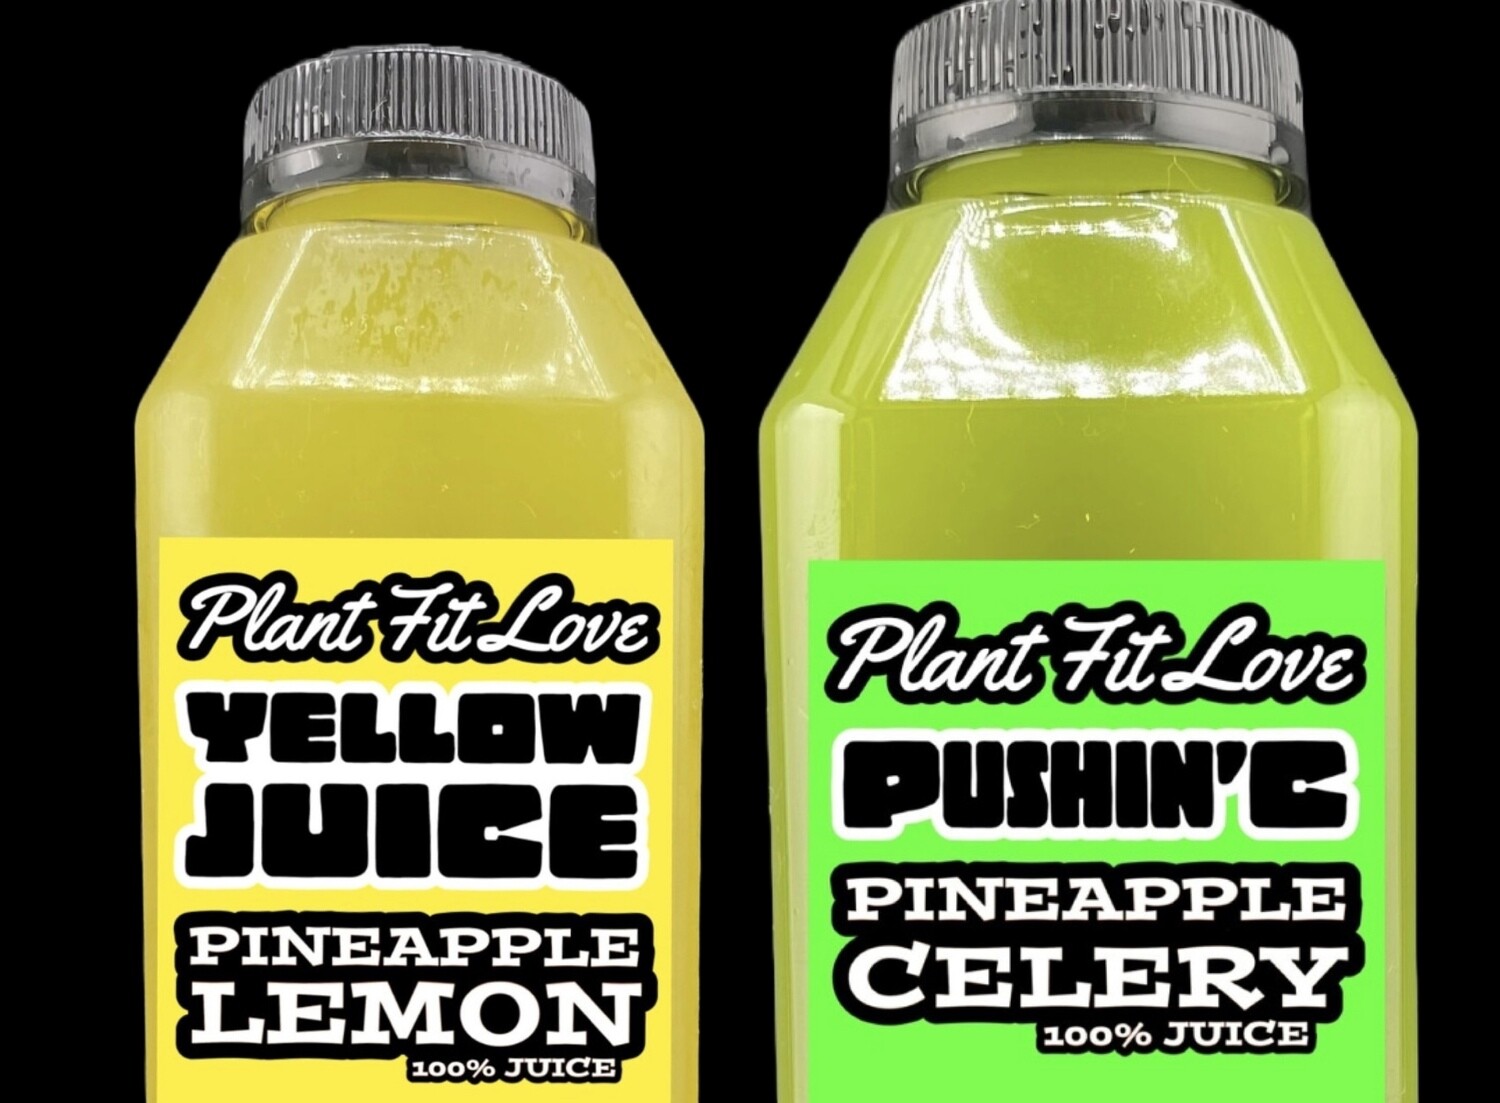 Yellow Juice or Pushin’ C (Sunday Pick-Up)